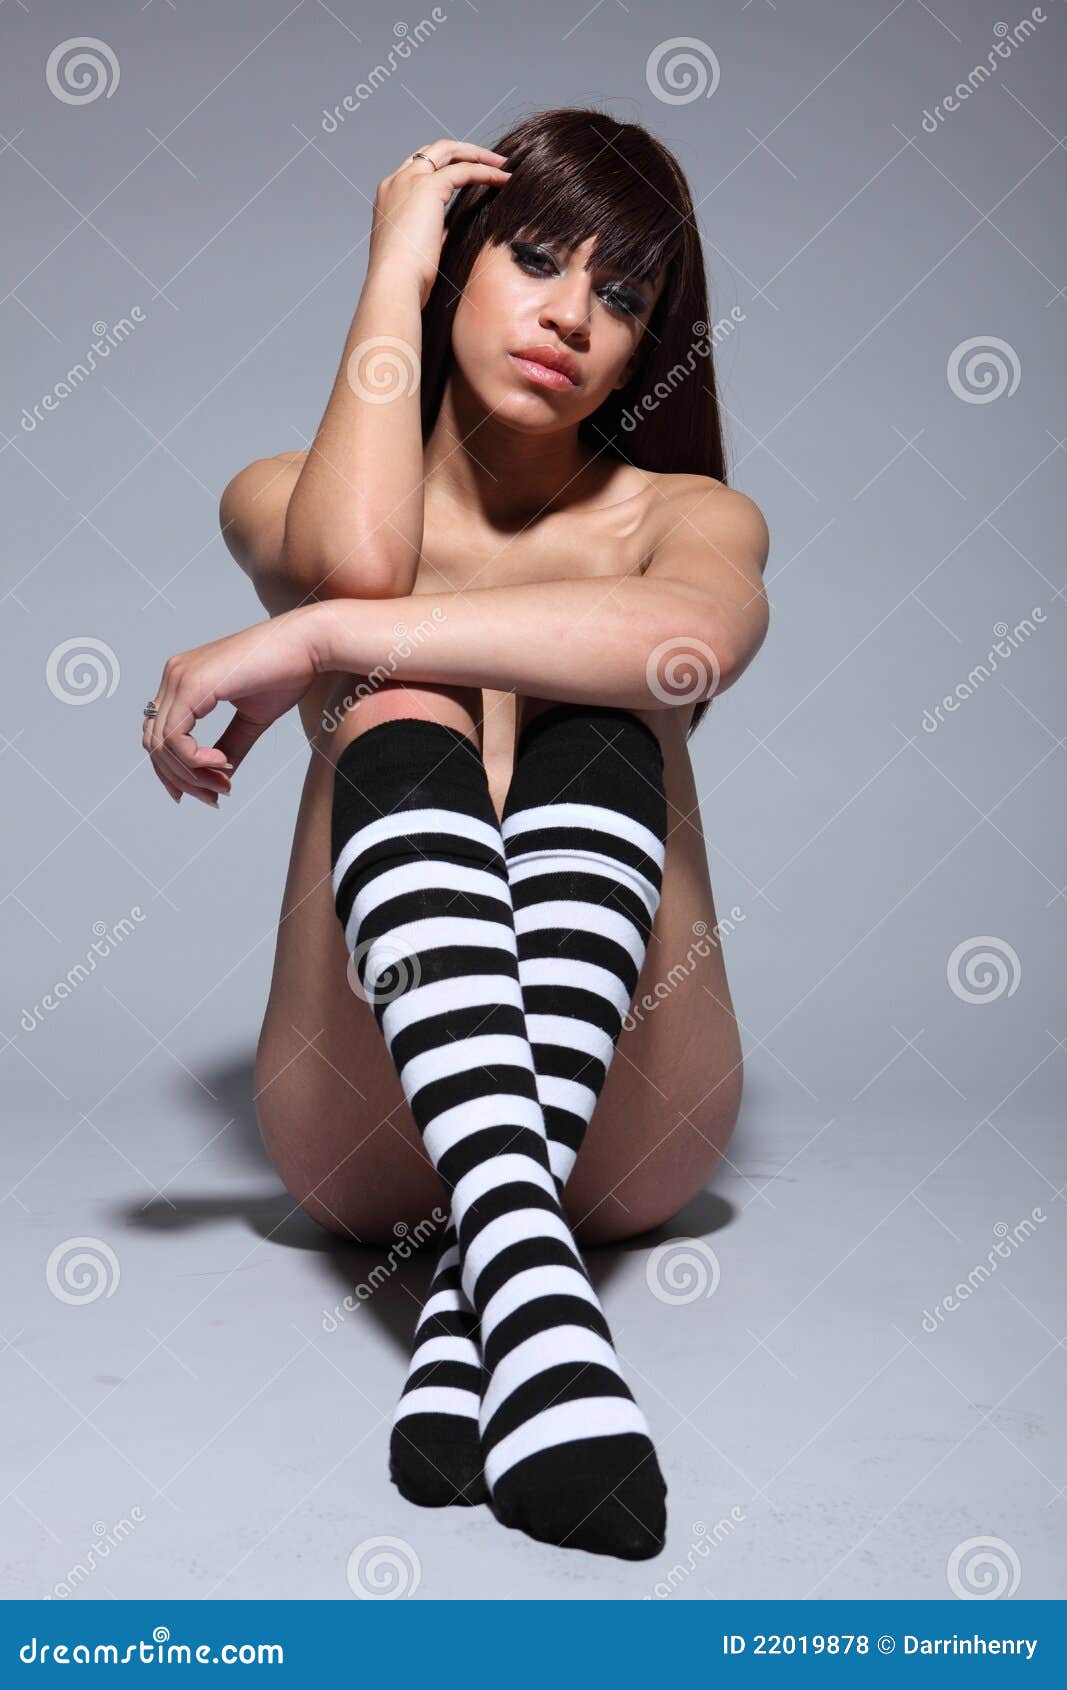 Nude women wearing socks